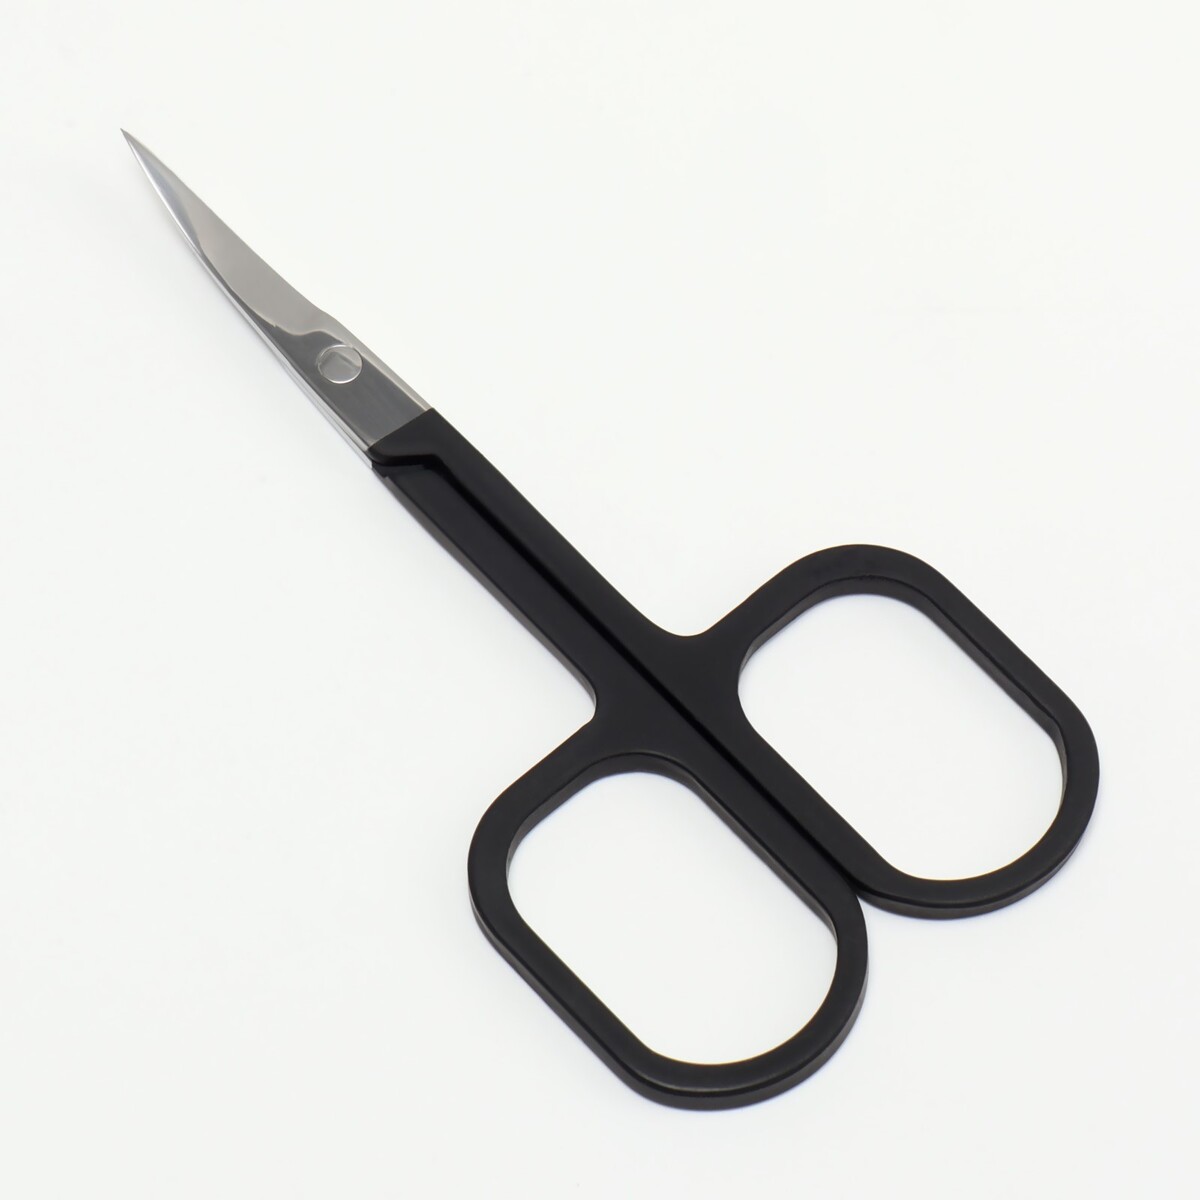 Ножницы маникюрные, узкие, загнутые, с прорезиненными ручками, 9 см, цвет серебристый/черный ножницы маникюрные загнутые 9 см на блистере серебристый